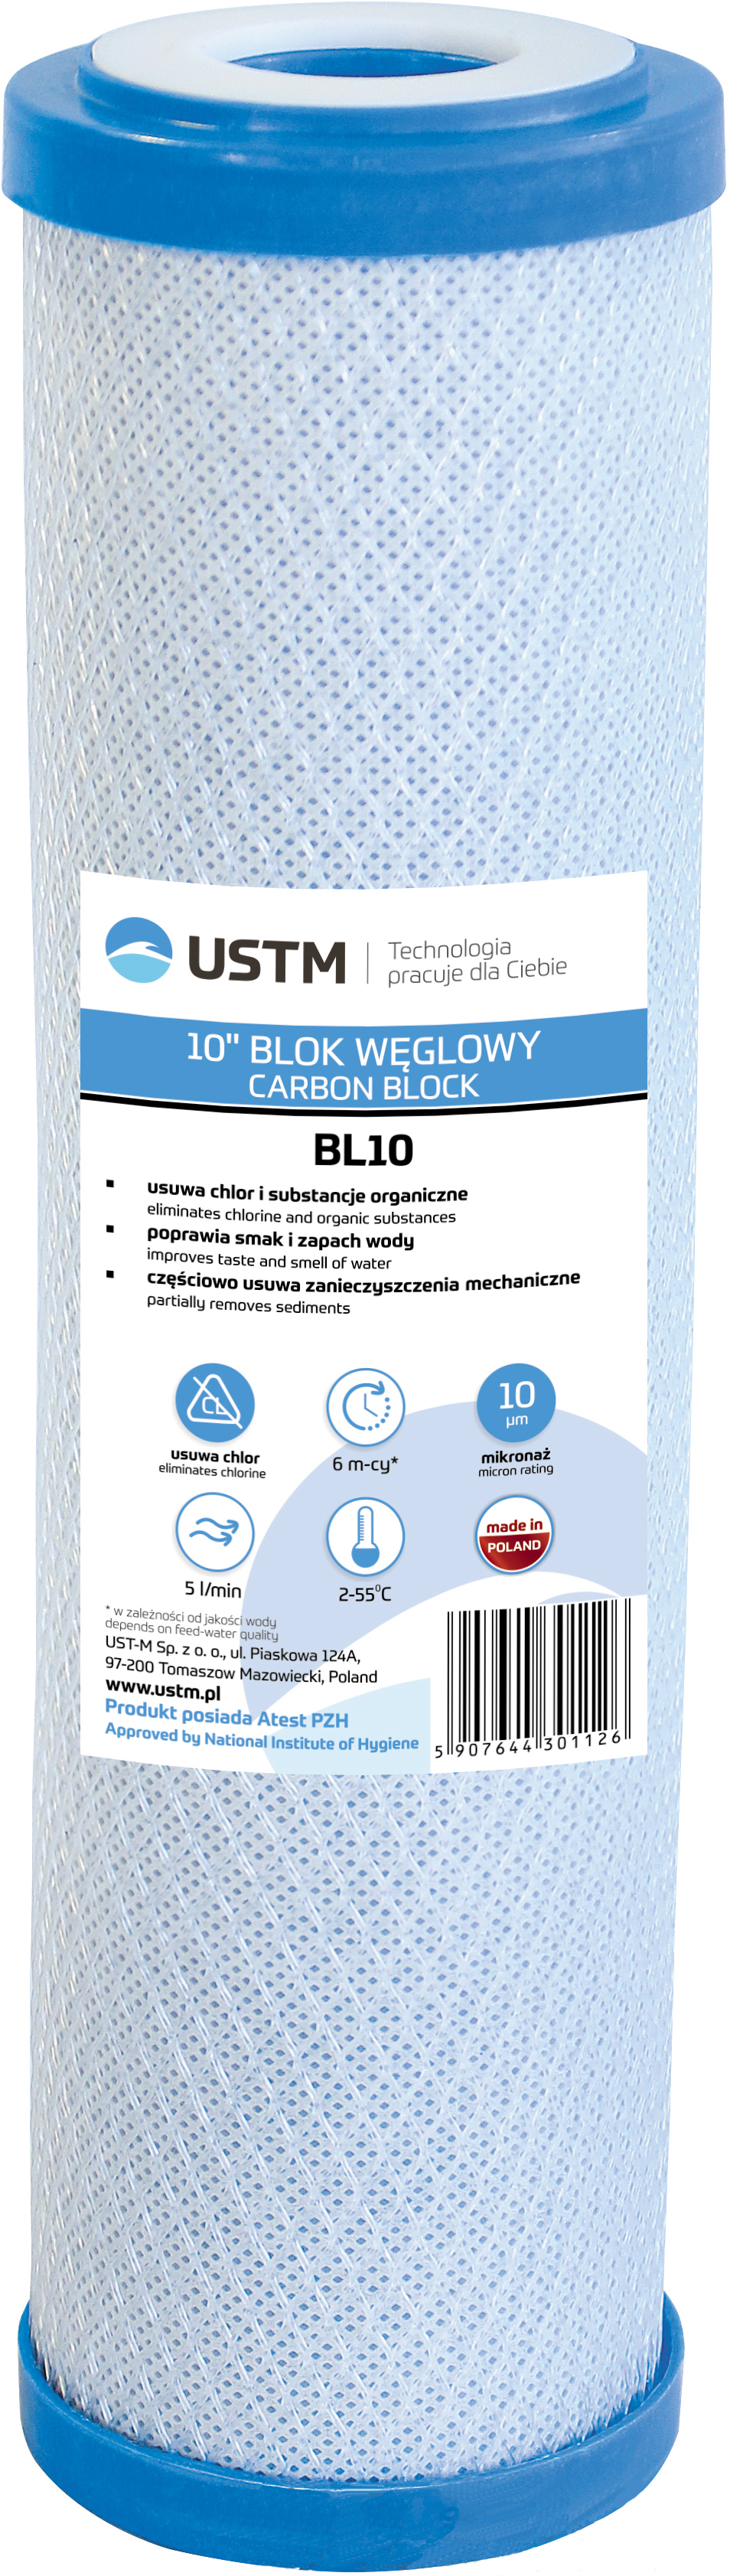 Картридж для проточного фильтра USTM BL10